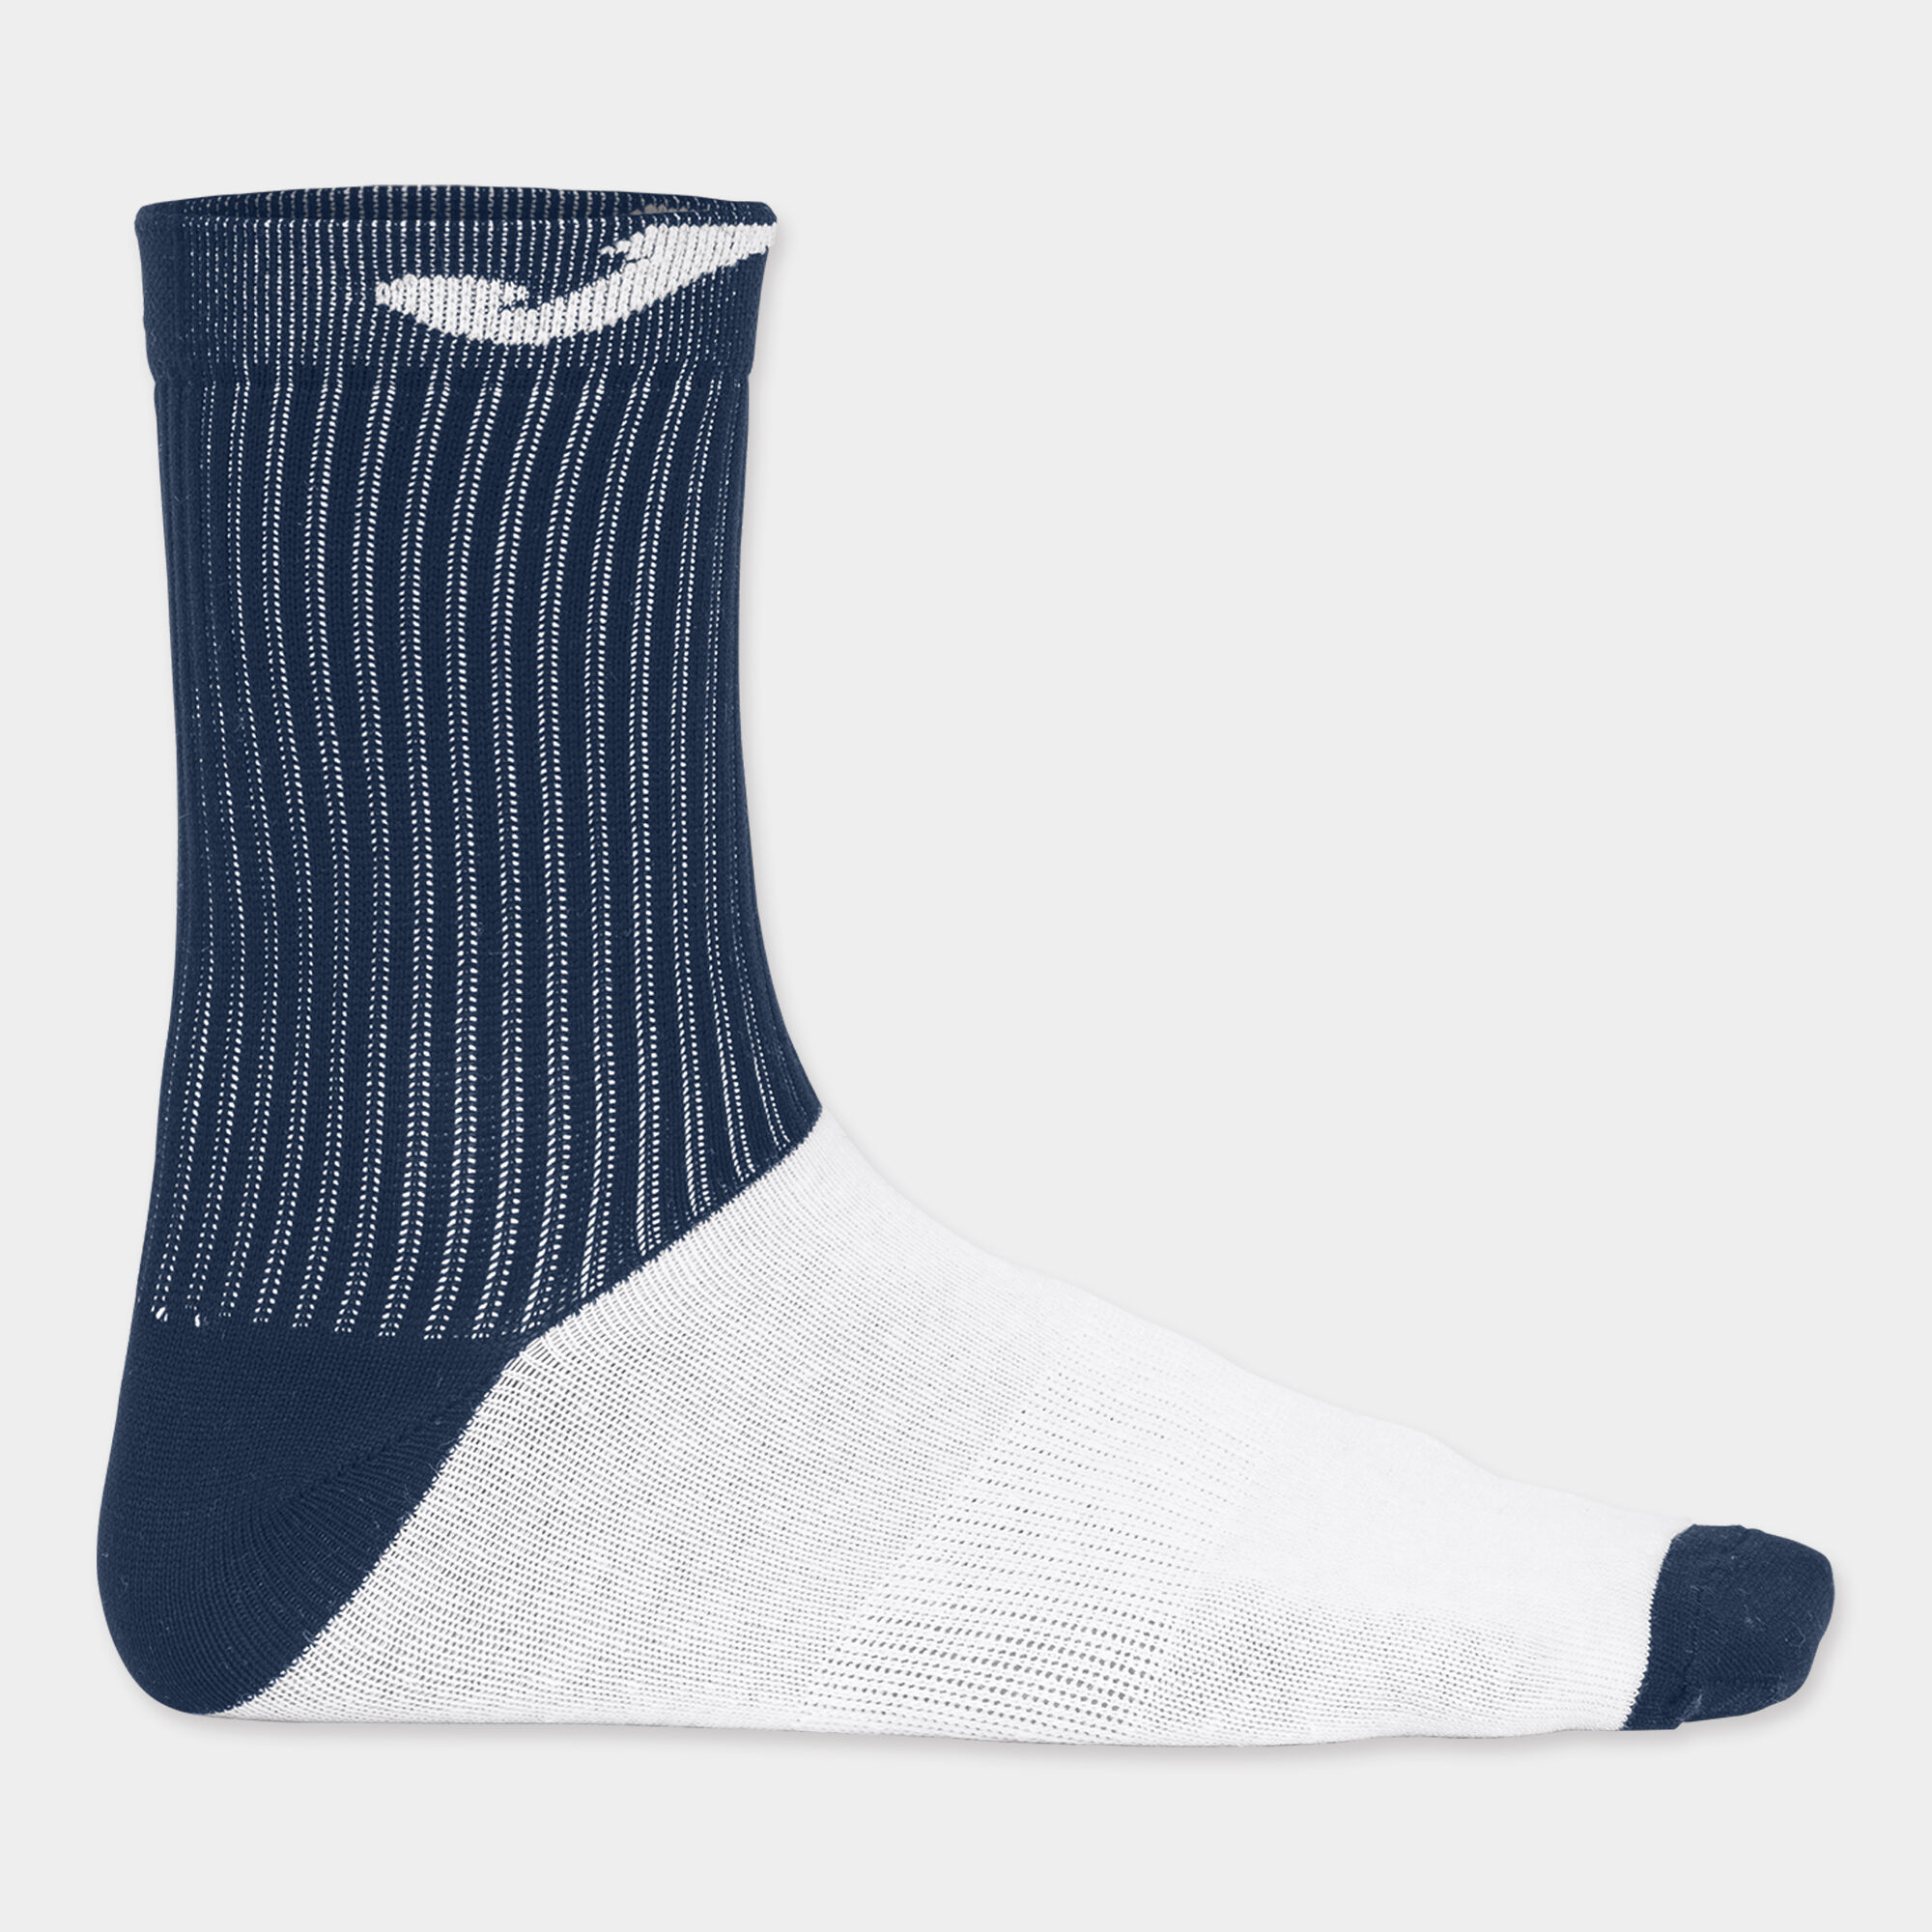 Socken unisex marineblau